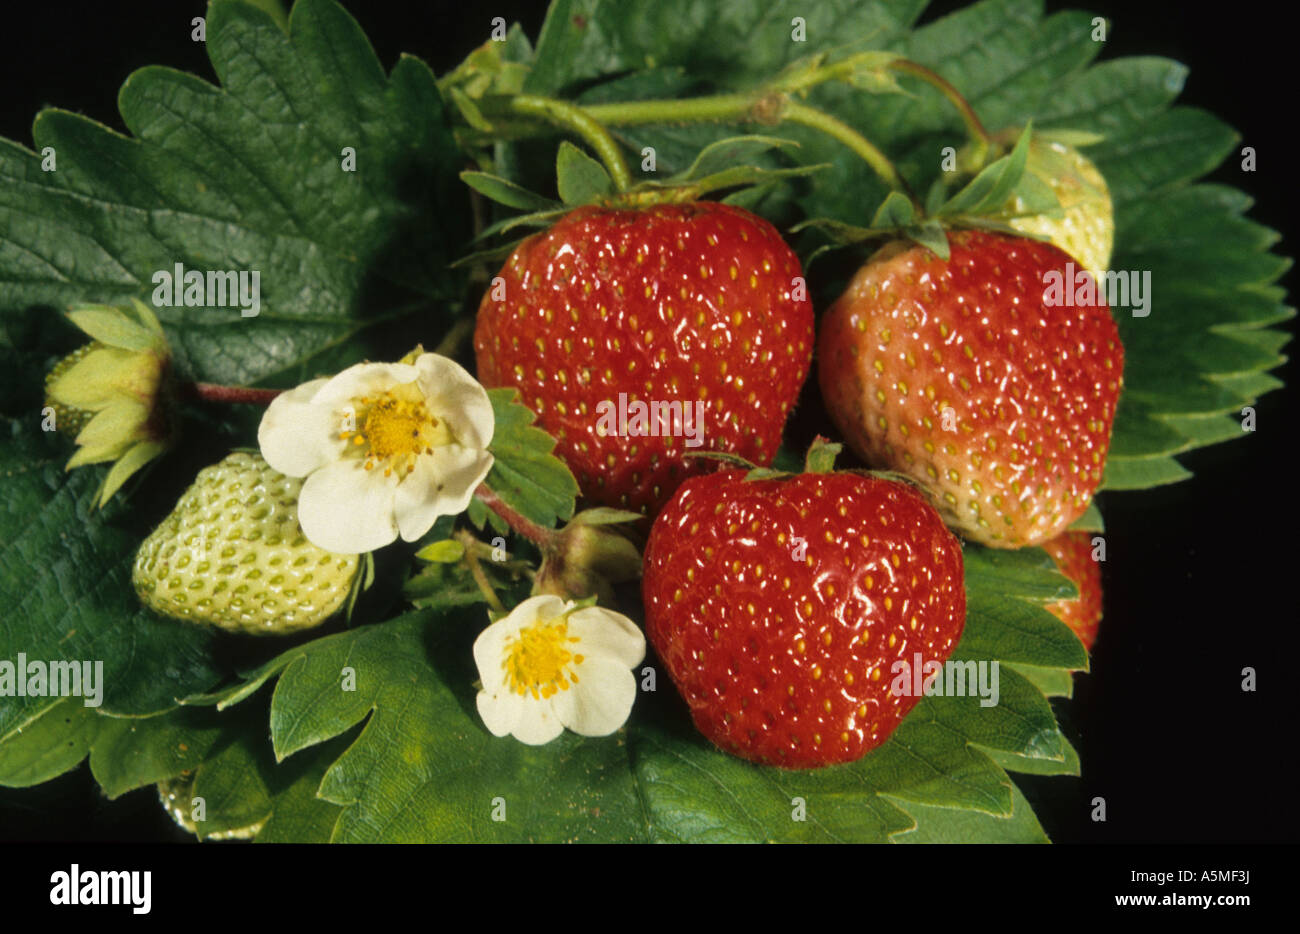 Erdbeere Strawberry Fragaria vesca fragola ERDBEERE Lebensmittel Nahrungsmittel Nahrung food generi alimentari alimentazione nut Stock Photo